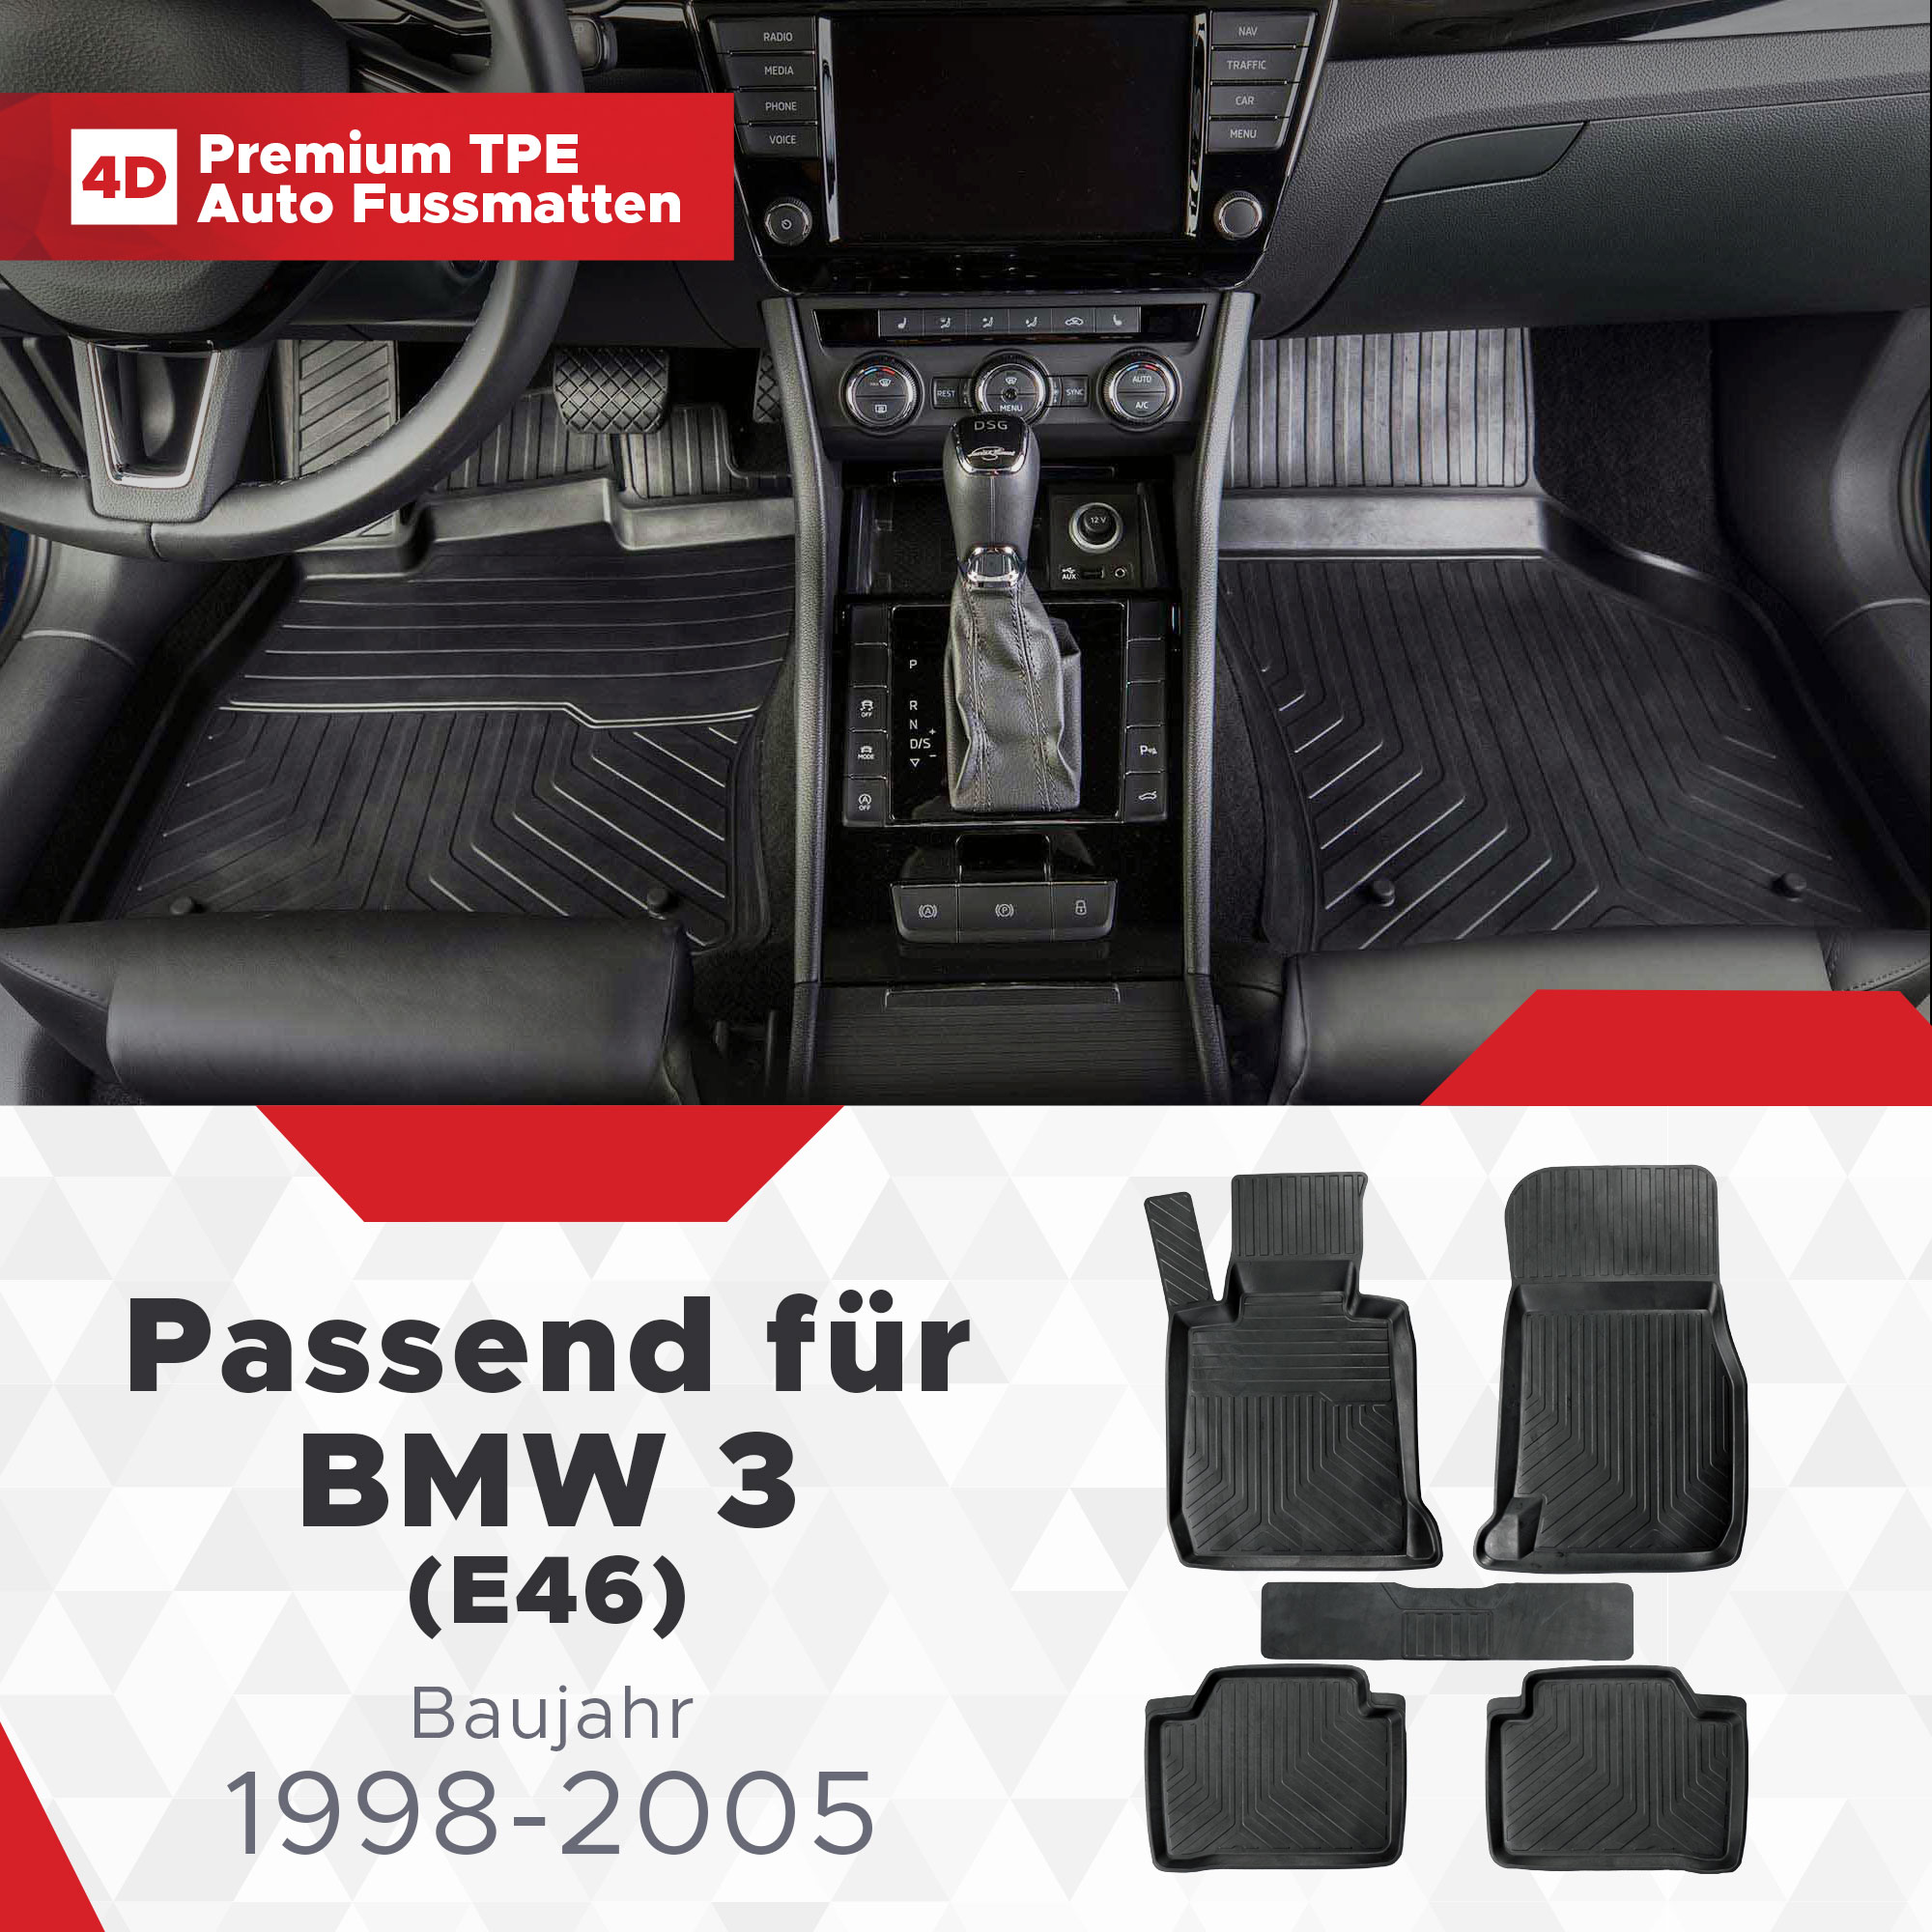 4D BMW 3 (E46) Bj. 1998-2005 Gummimatten - fussmattenprofi